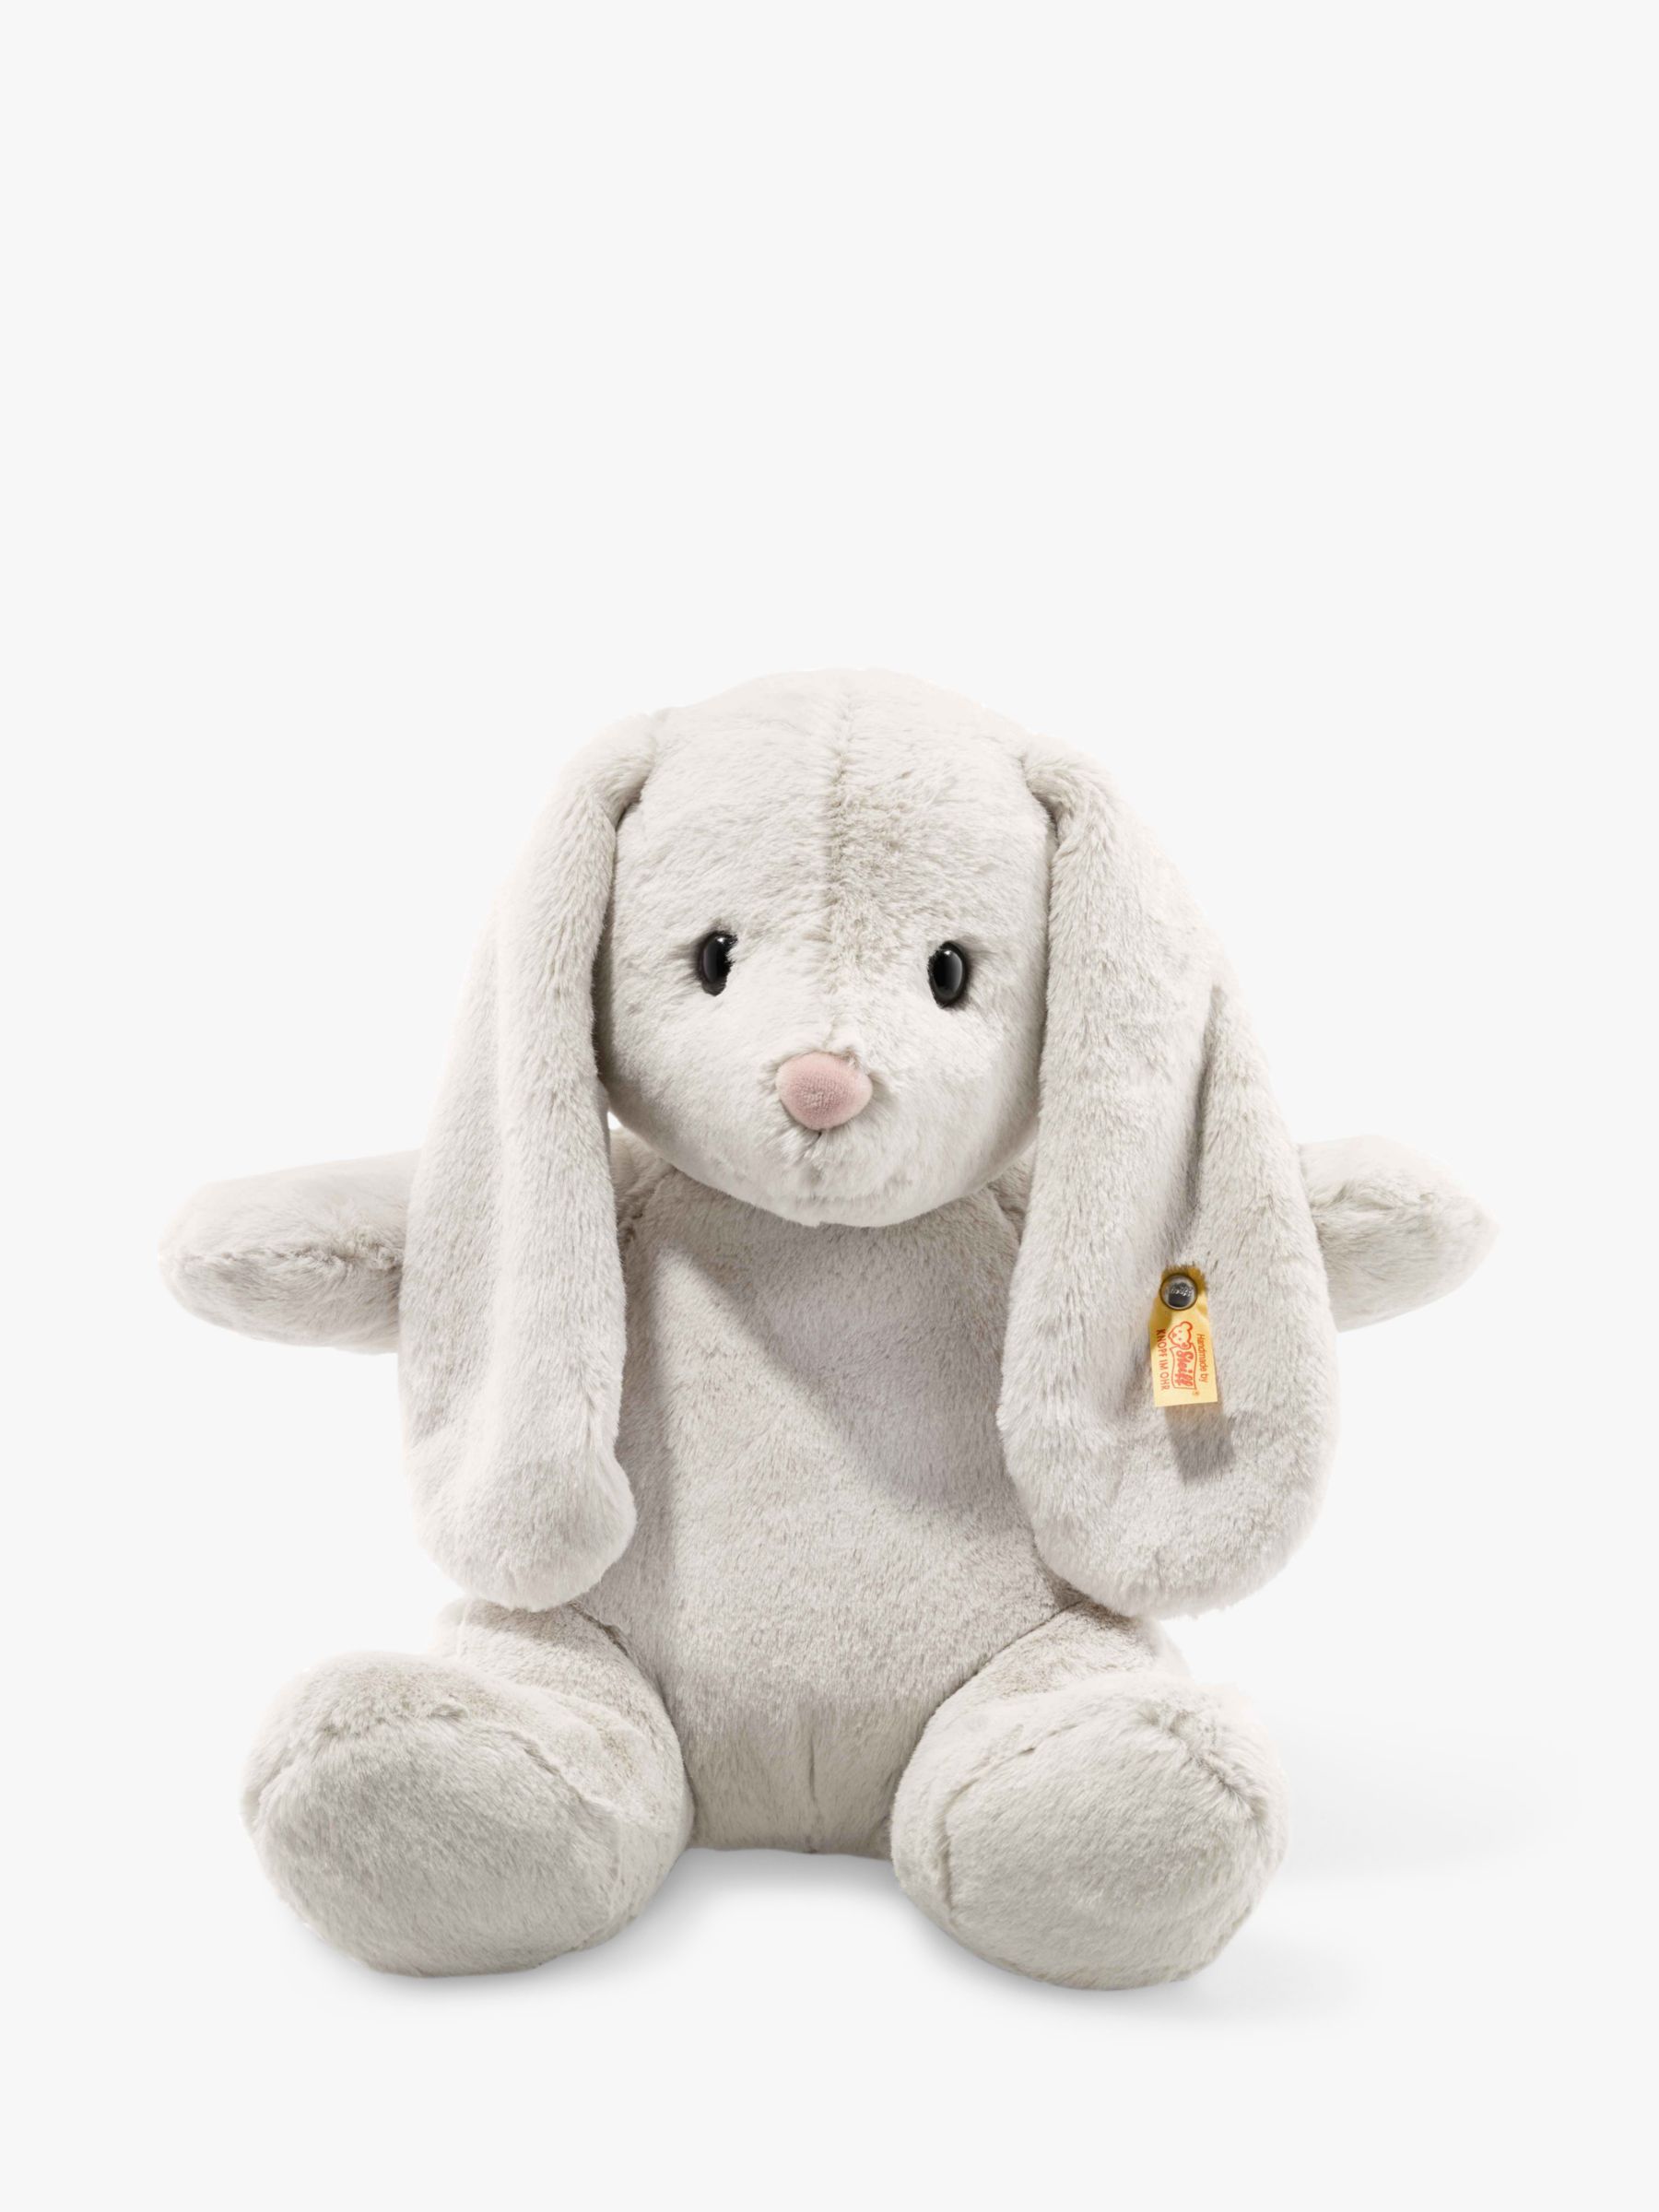 cuddly rabbit soft toy